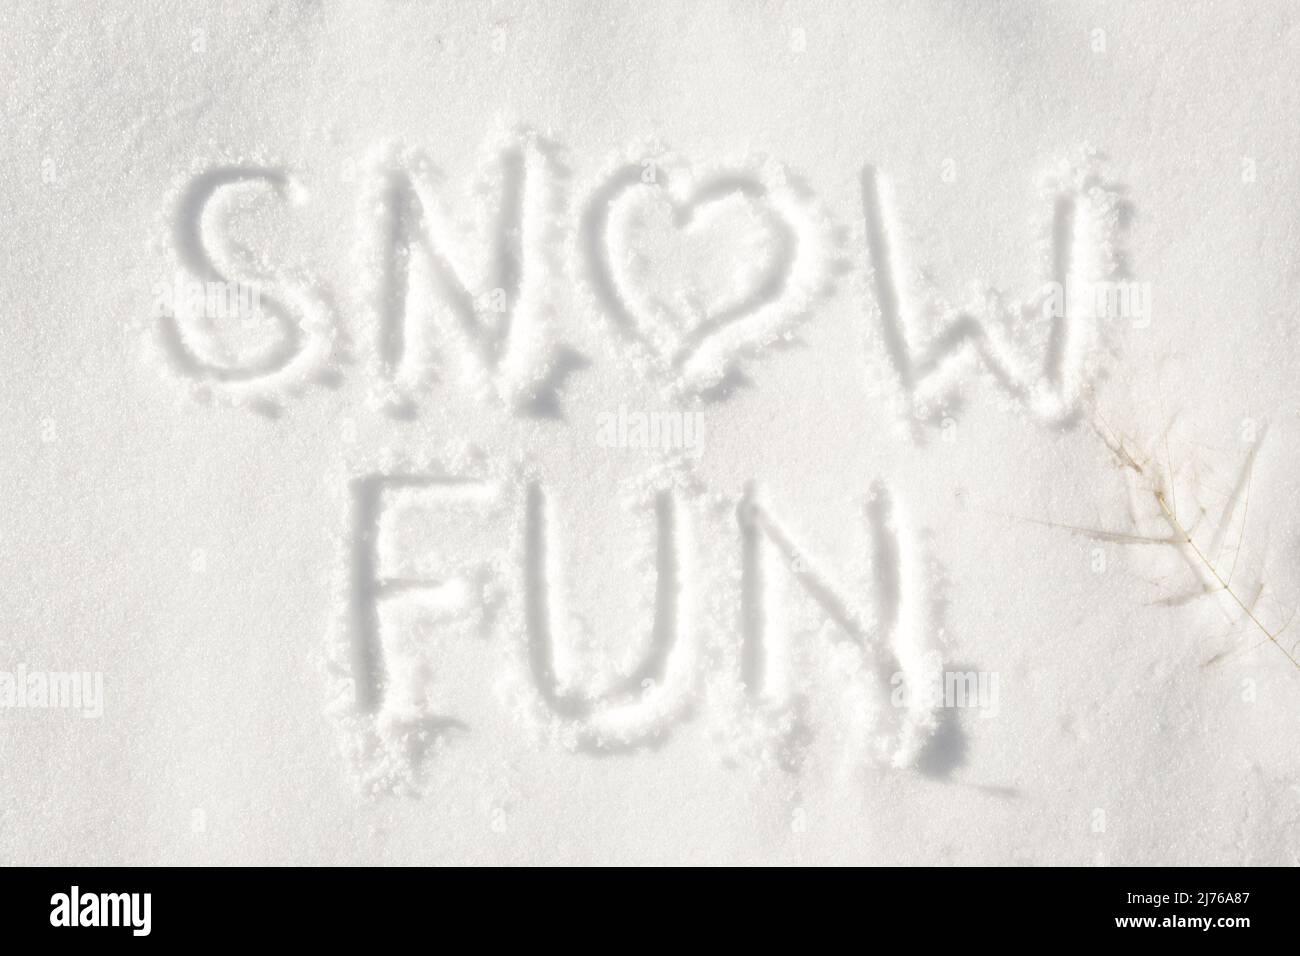 Wörter „Spaß im Schnee“ mit einem Herz für einen Brief oder ein Konzept für Spaß, das man an einem verschneiten Wintertag haben kann Stockfoto